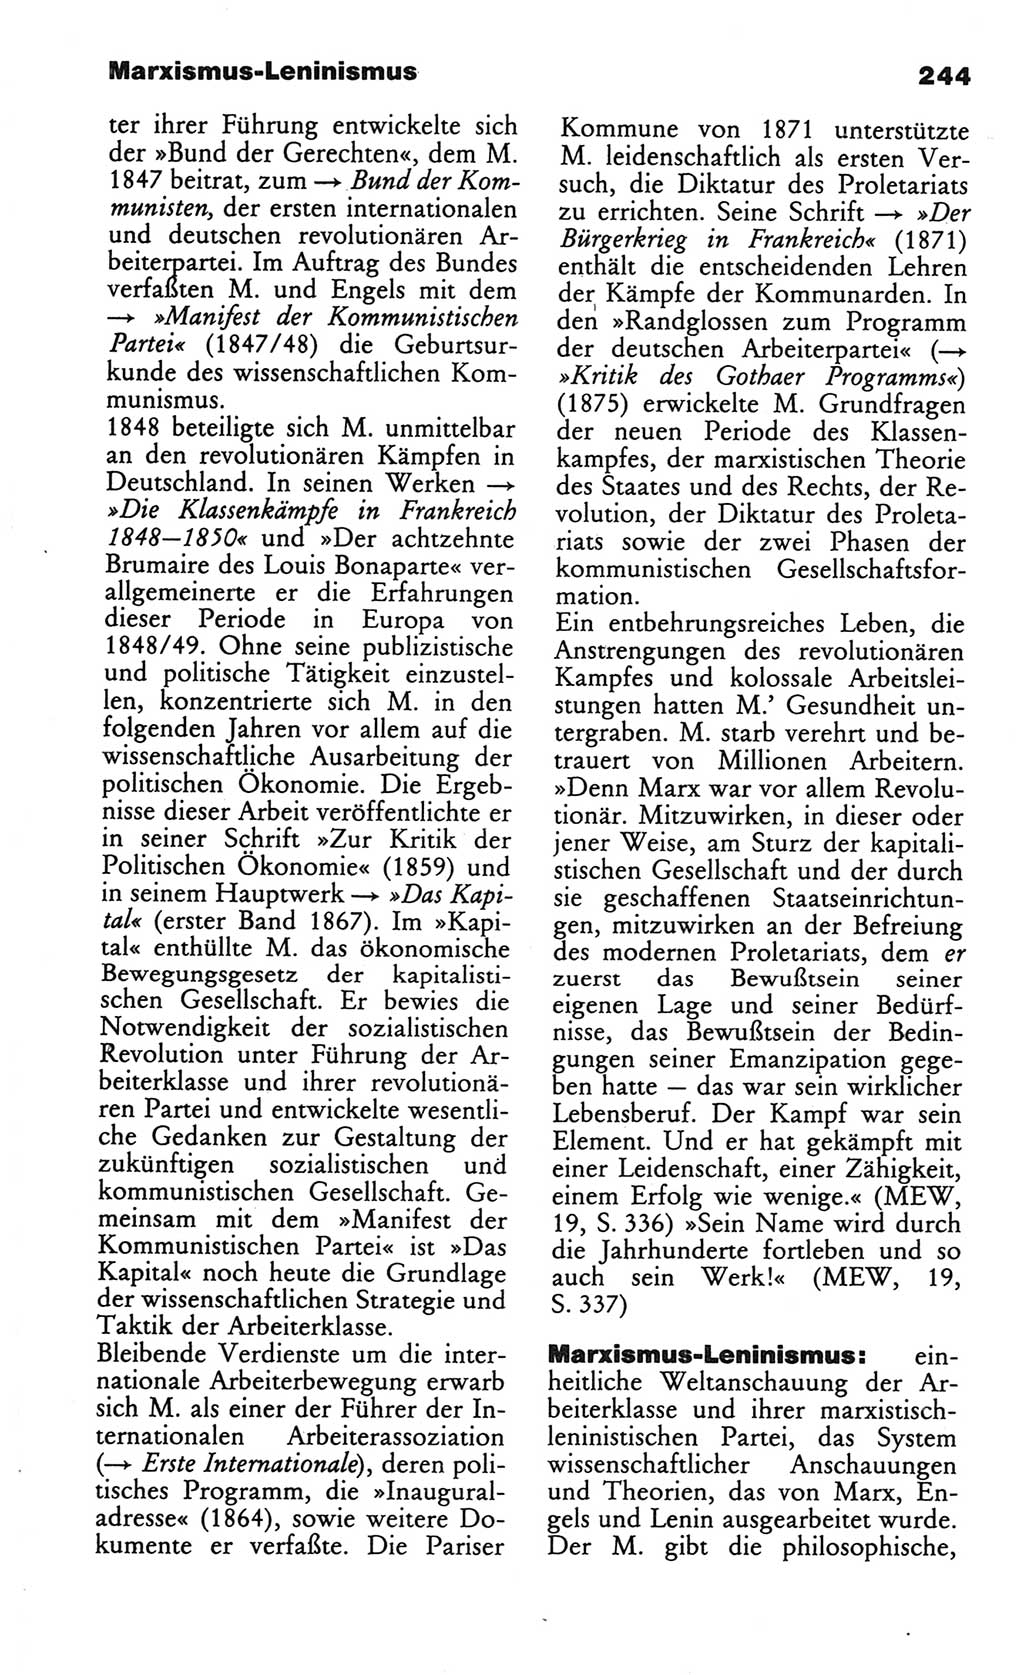 Wörterbuch des wissenschaftlichen Kommunismus [Deutsche Demokratische Republik (DDR)] 1984, Seite 244 (Wb. wiss. Komm. DDR 1984, S. 244)